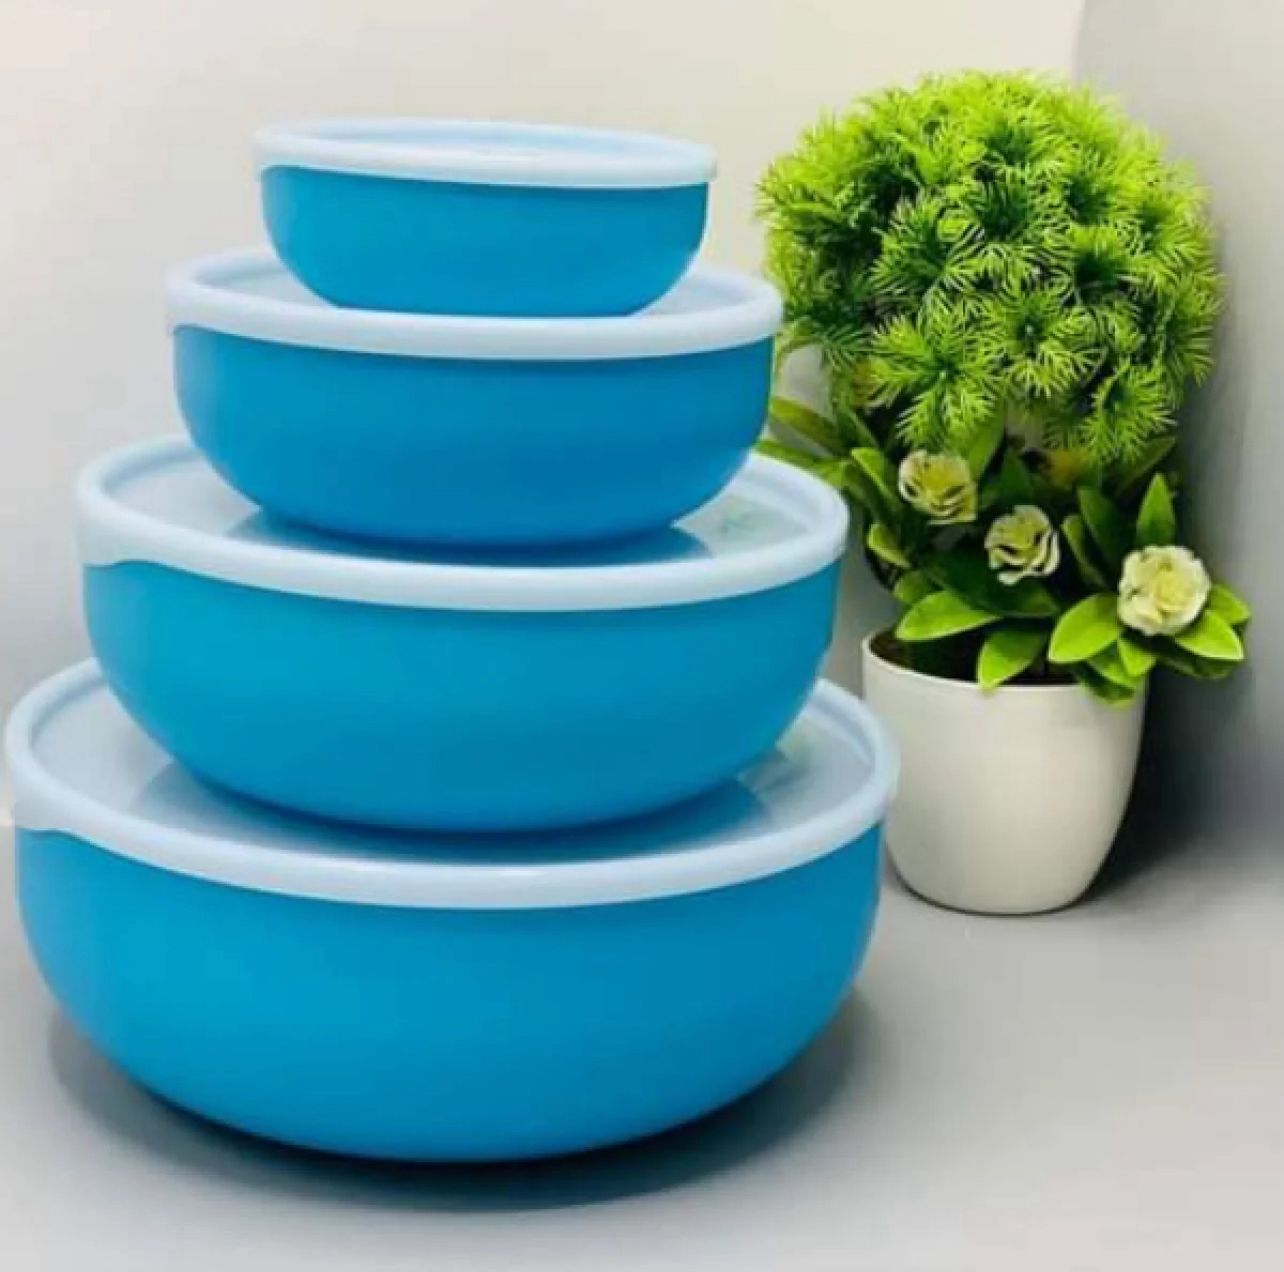 Premium 4 piece bowl set in 3 colors